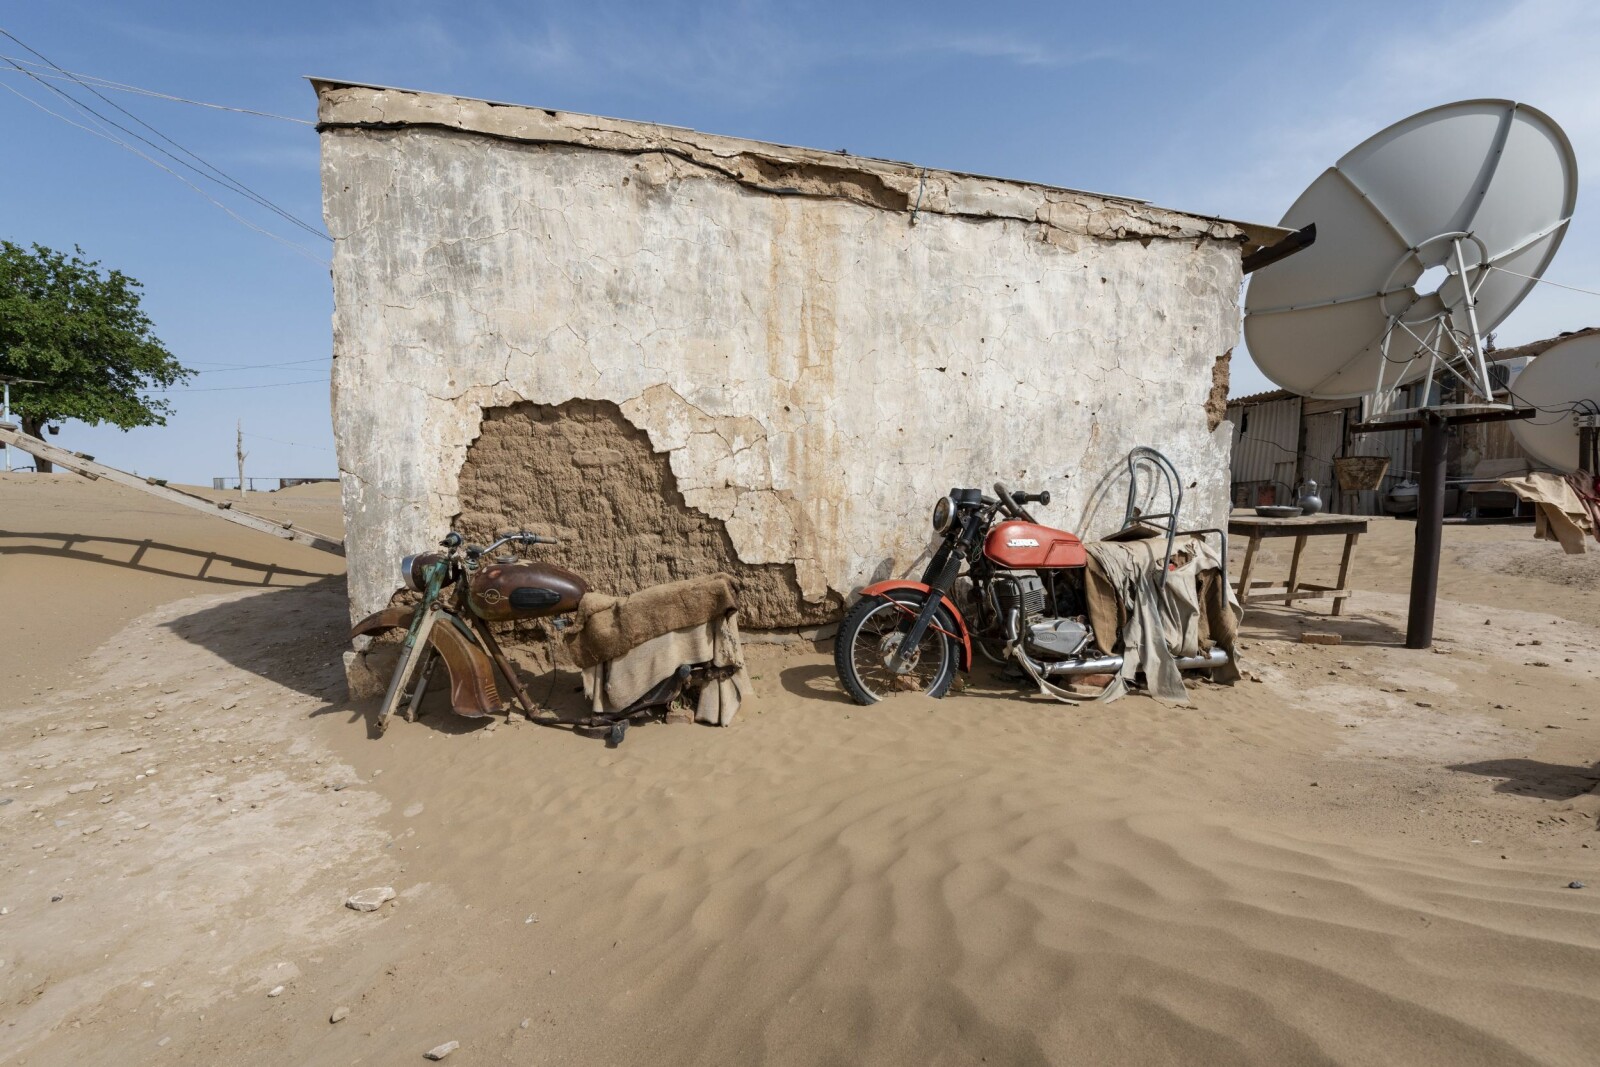 <b>BOKURDAK:</b> Landsbyen Bokurdak ligger ved starten på Karakum-ørkenen. De begynner å gå tomme for reservedeler til motorsykkelen.